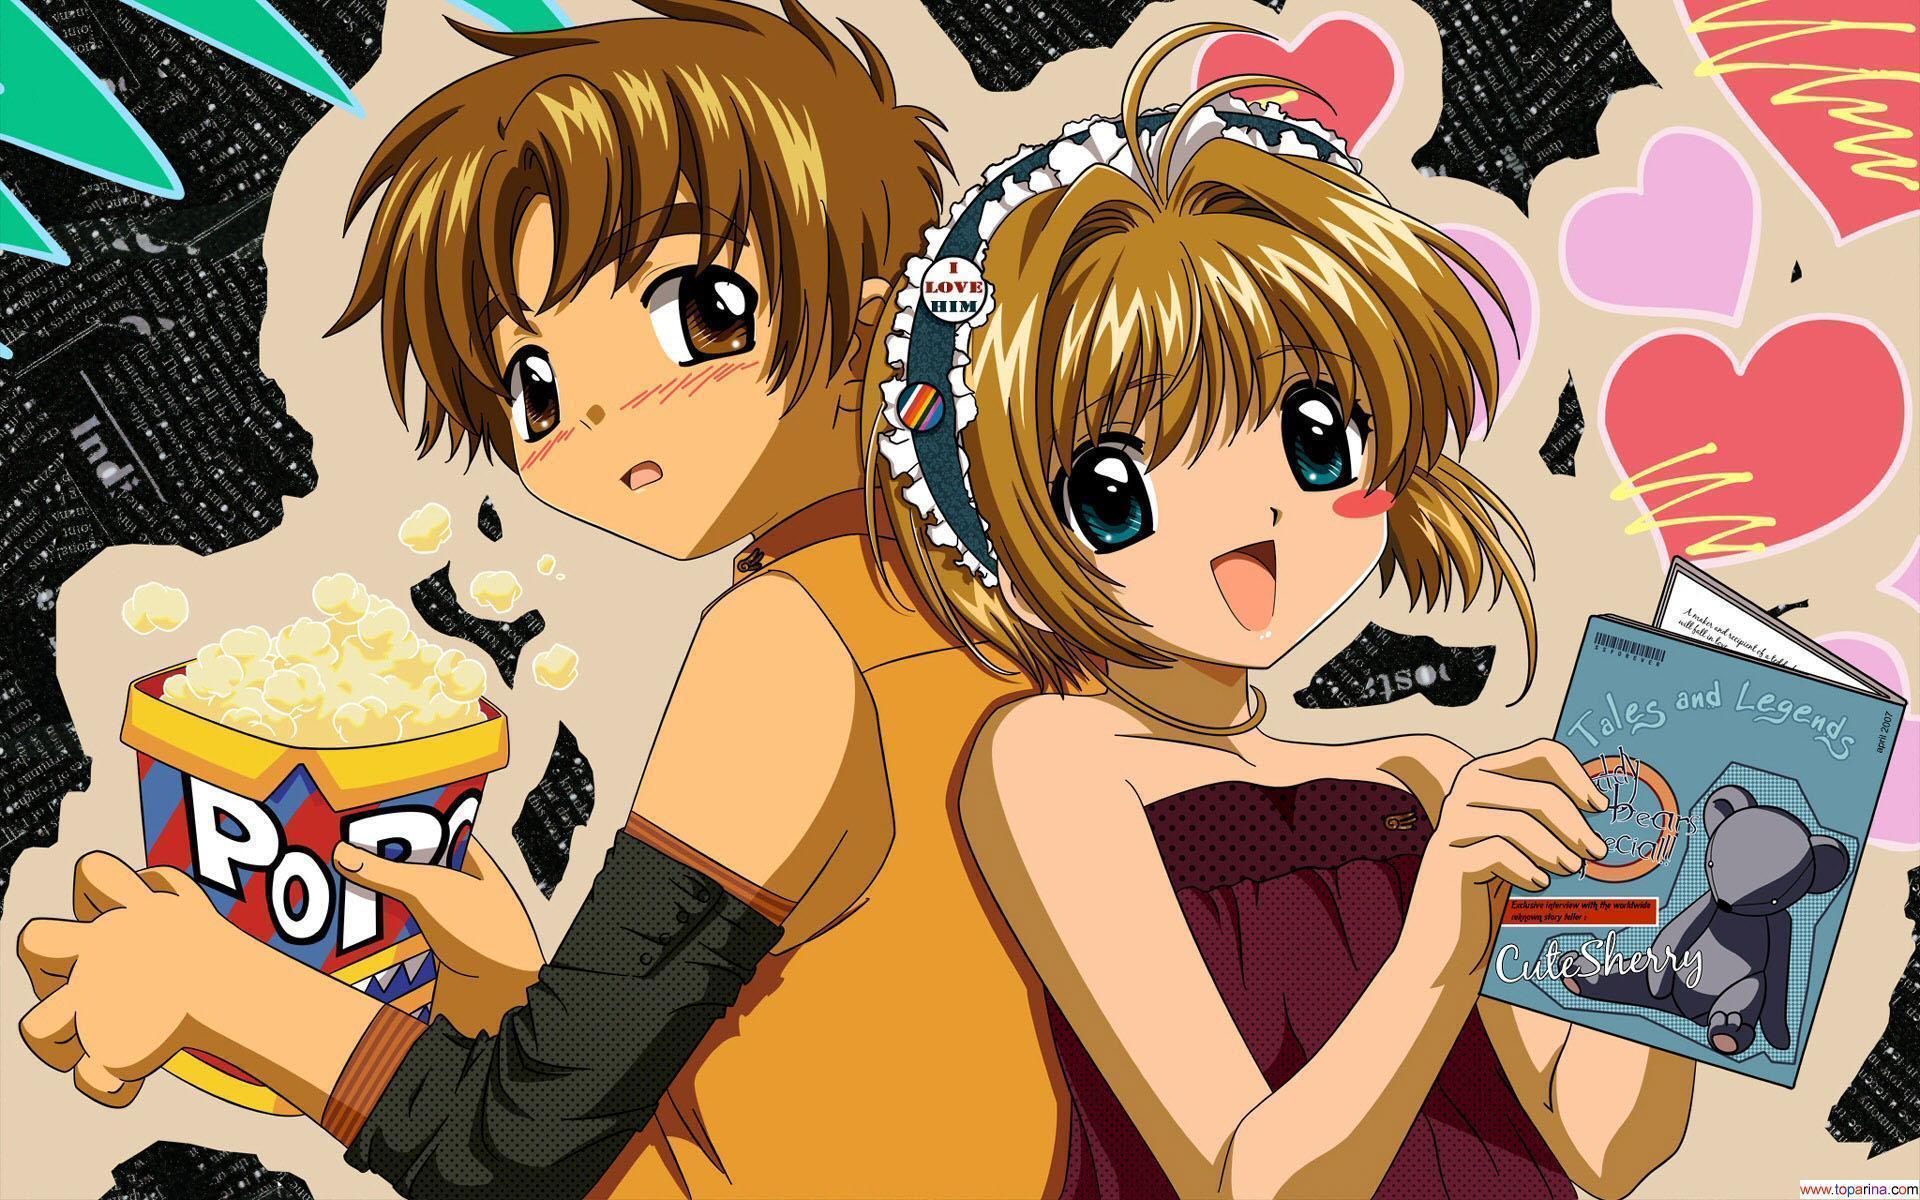 Wallpaper For > Cute Anime Couple Wallpaper For Desktop